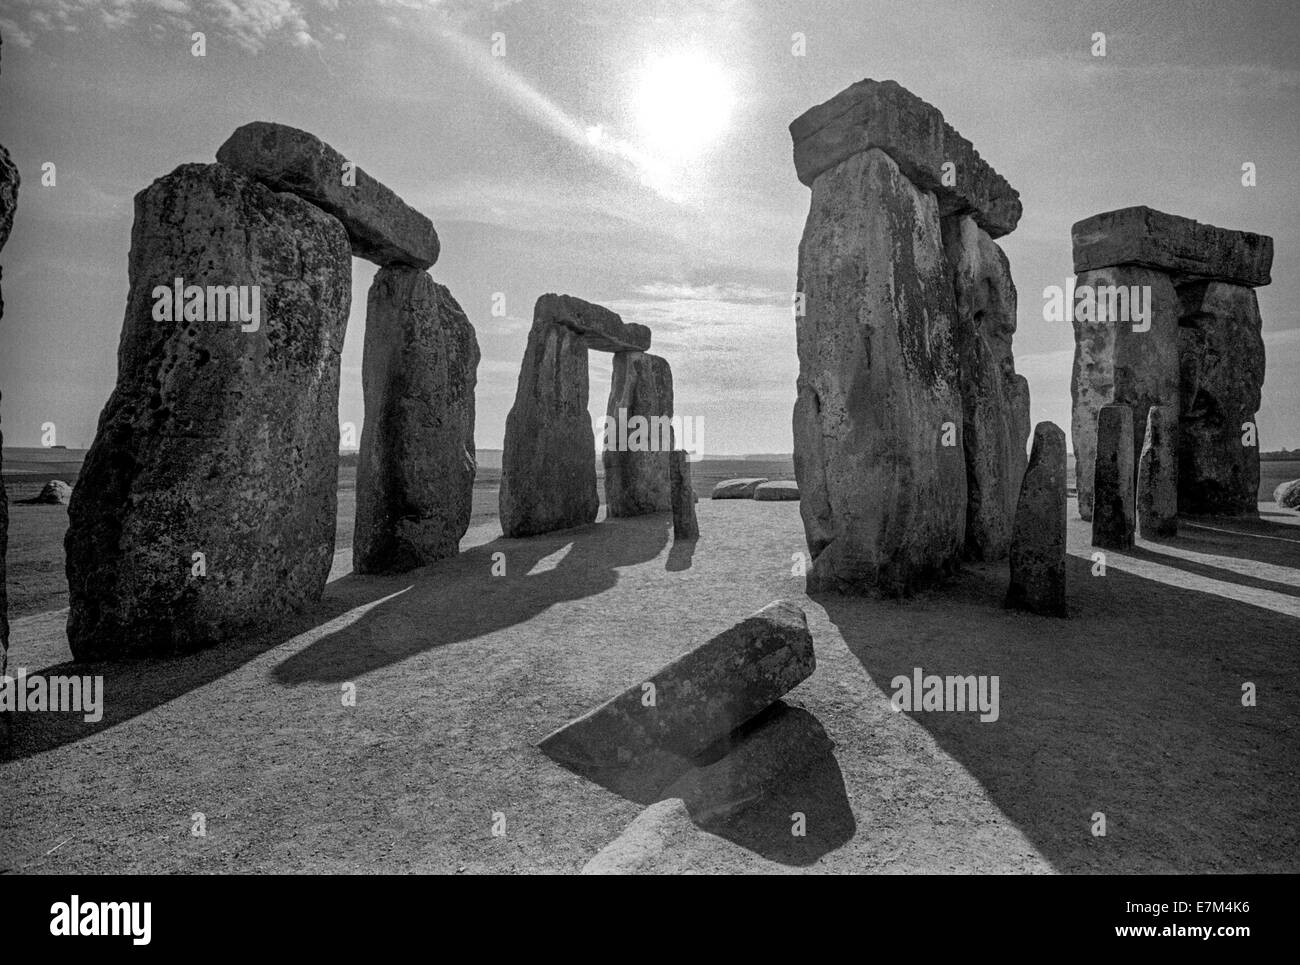 Späten Nachmittag Summe scheint durch Stonehenge, ein prähistorisches Monument befindet sich in Wiltshire, England, an Salisbury Plain. Beachten Sie lange Schatten. Stockfoto